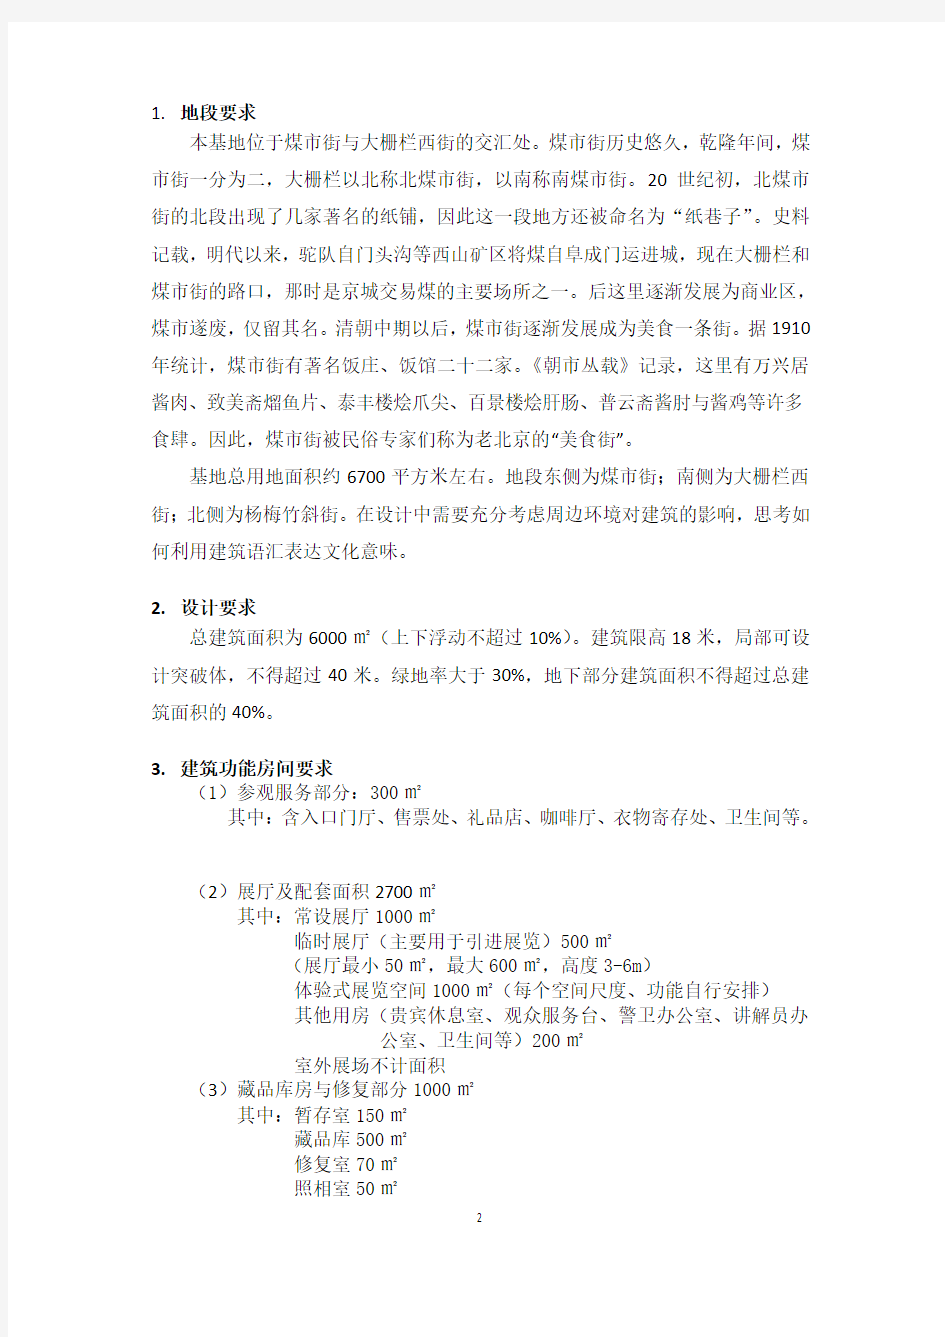 北京民俗文化博物馆设计任务书